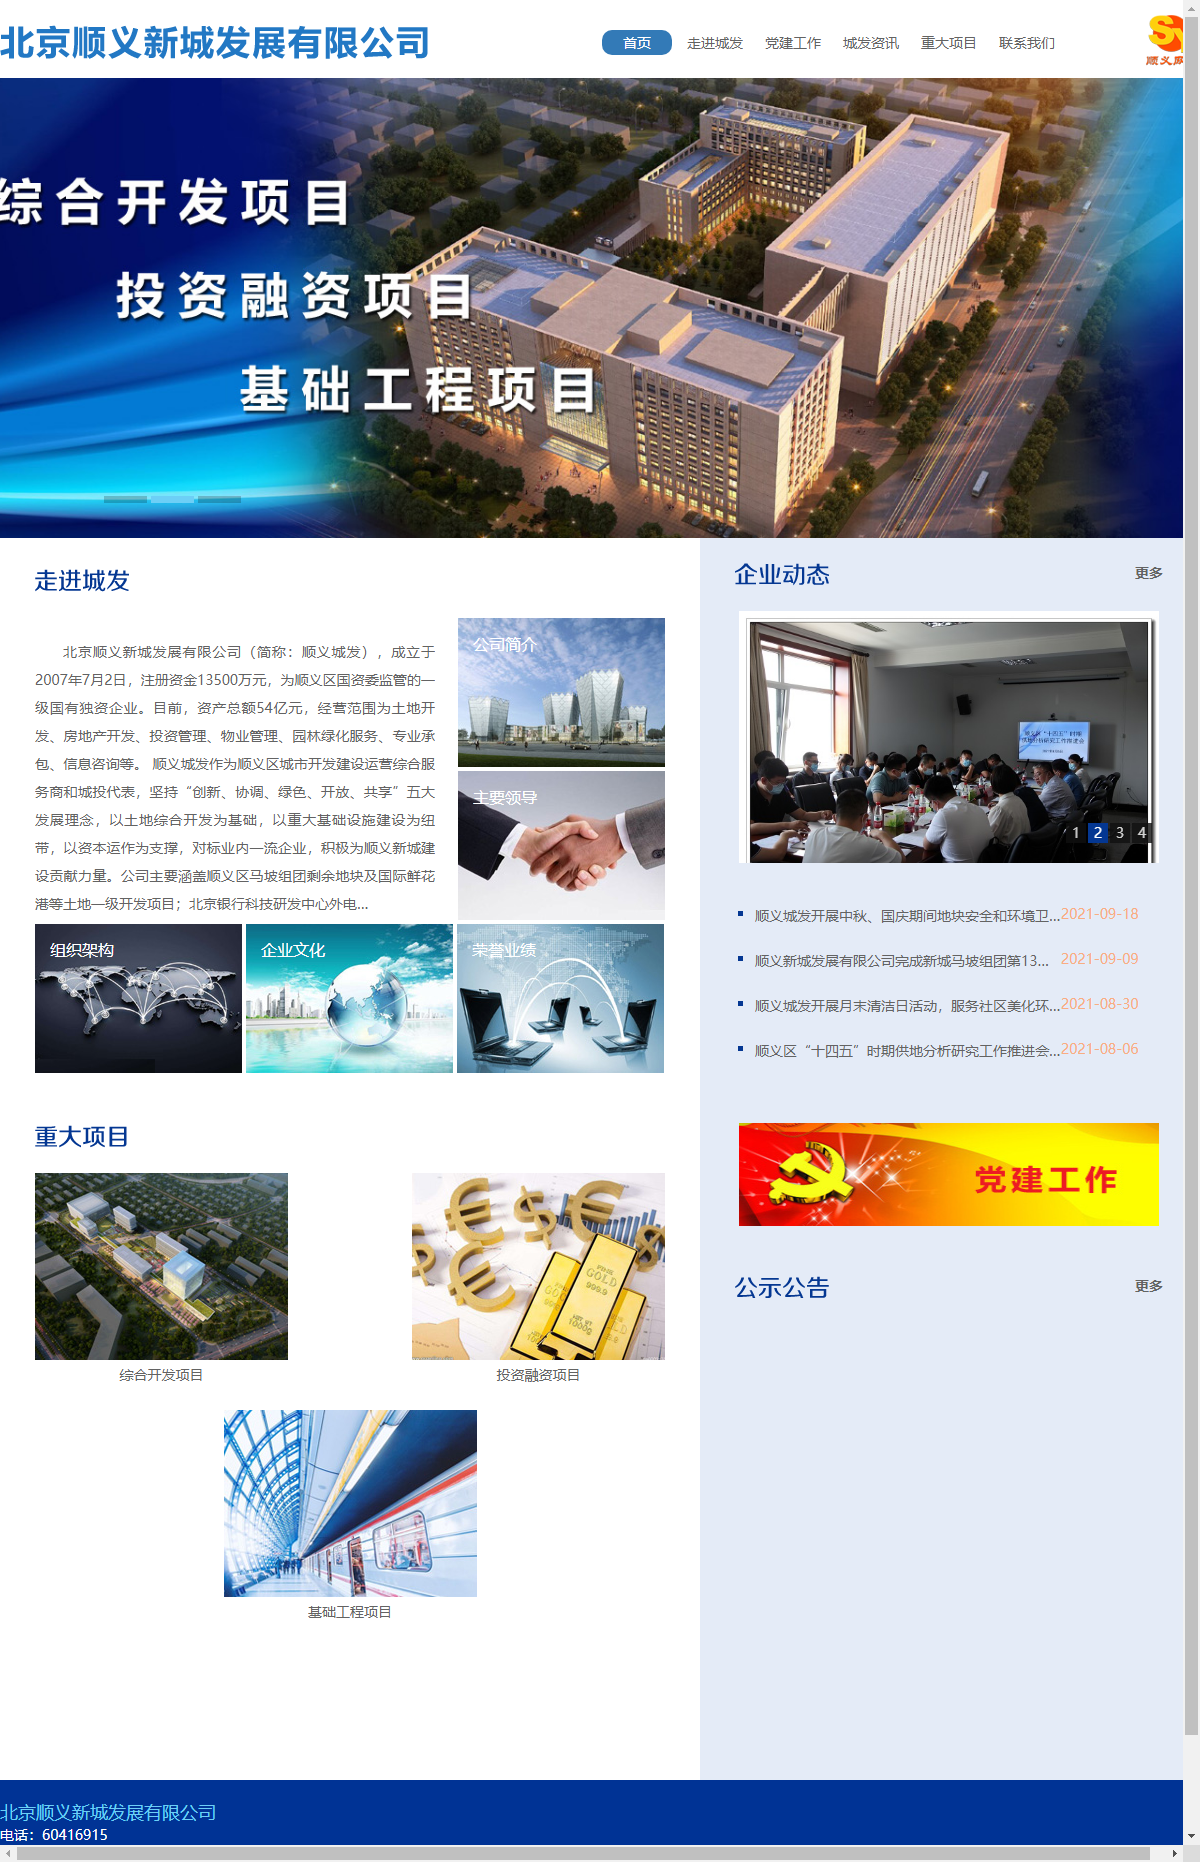 北京顺义新城发展有限公司网站案例